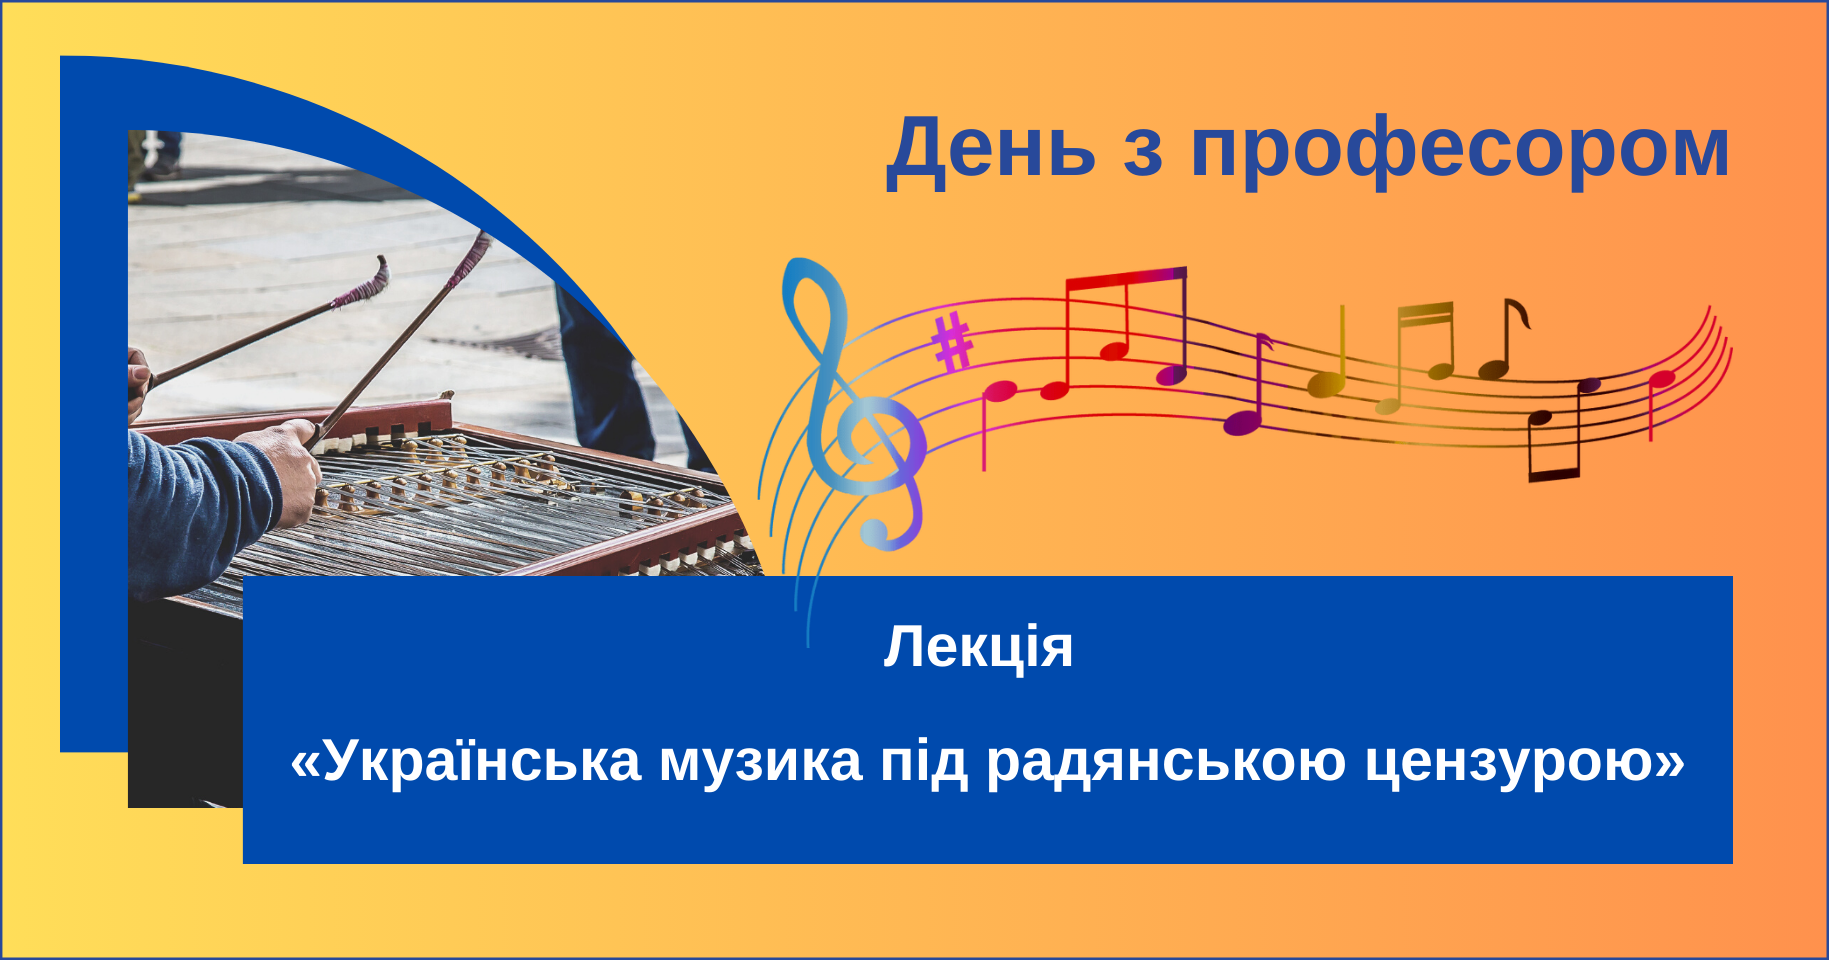 День з професором: лекція «Українська музика під радянською цензурою»